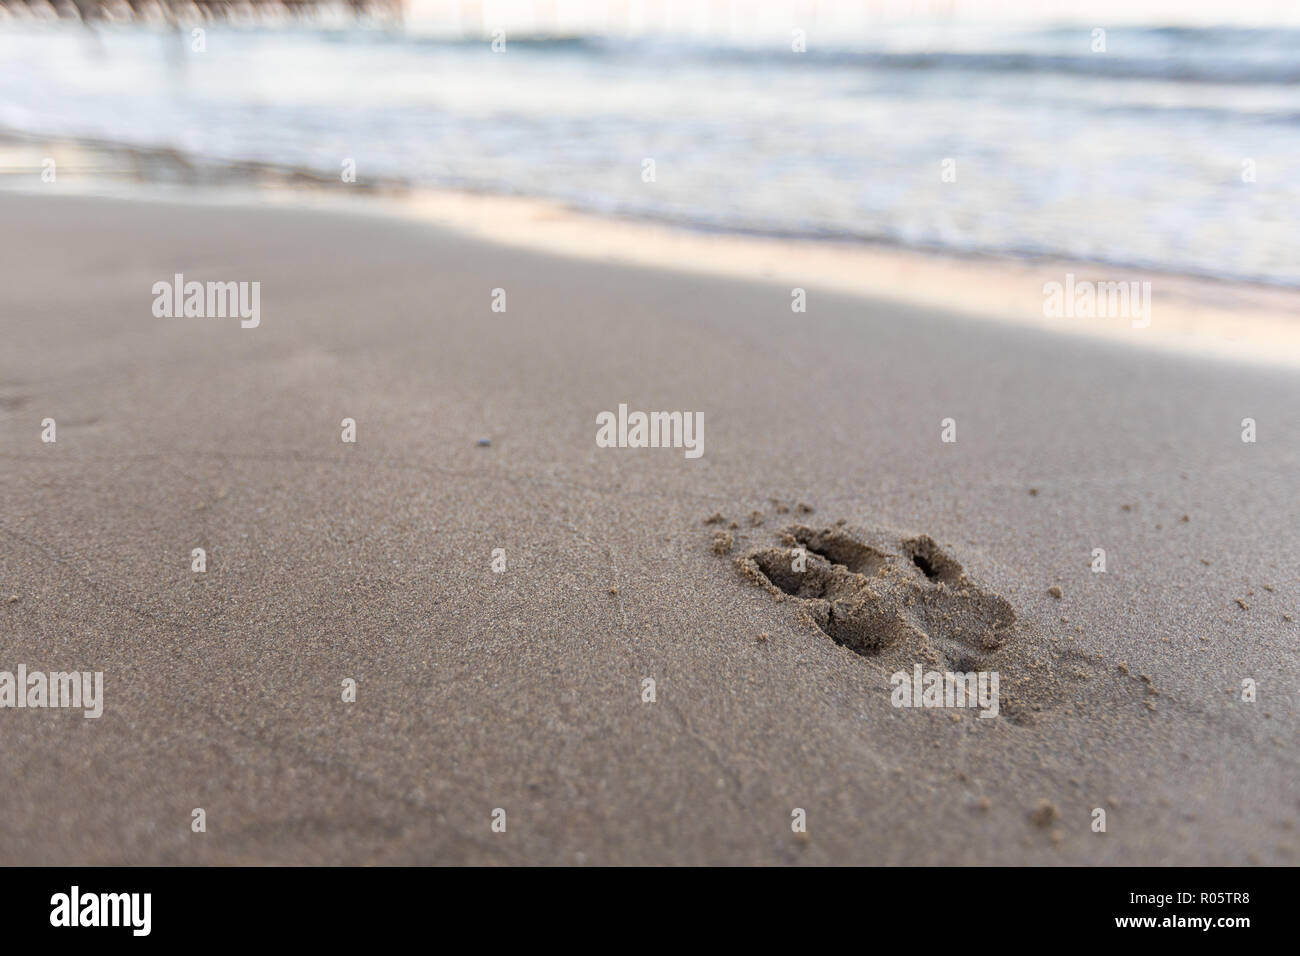 Wet cler sabbia sulla spiaggia con footprint di cani Foto Stock